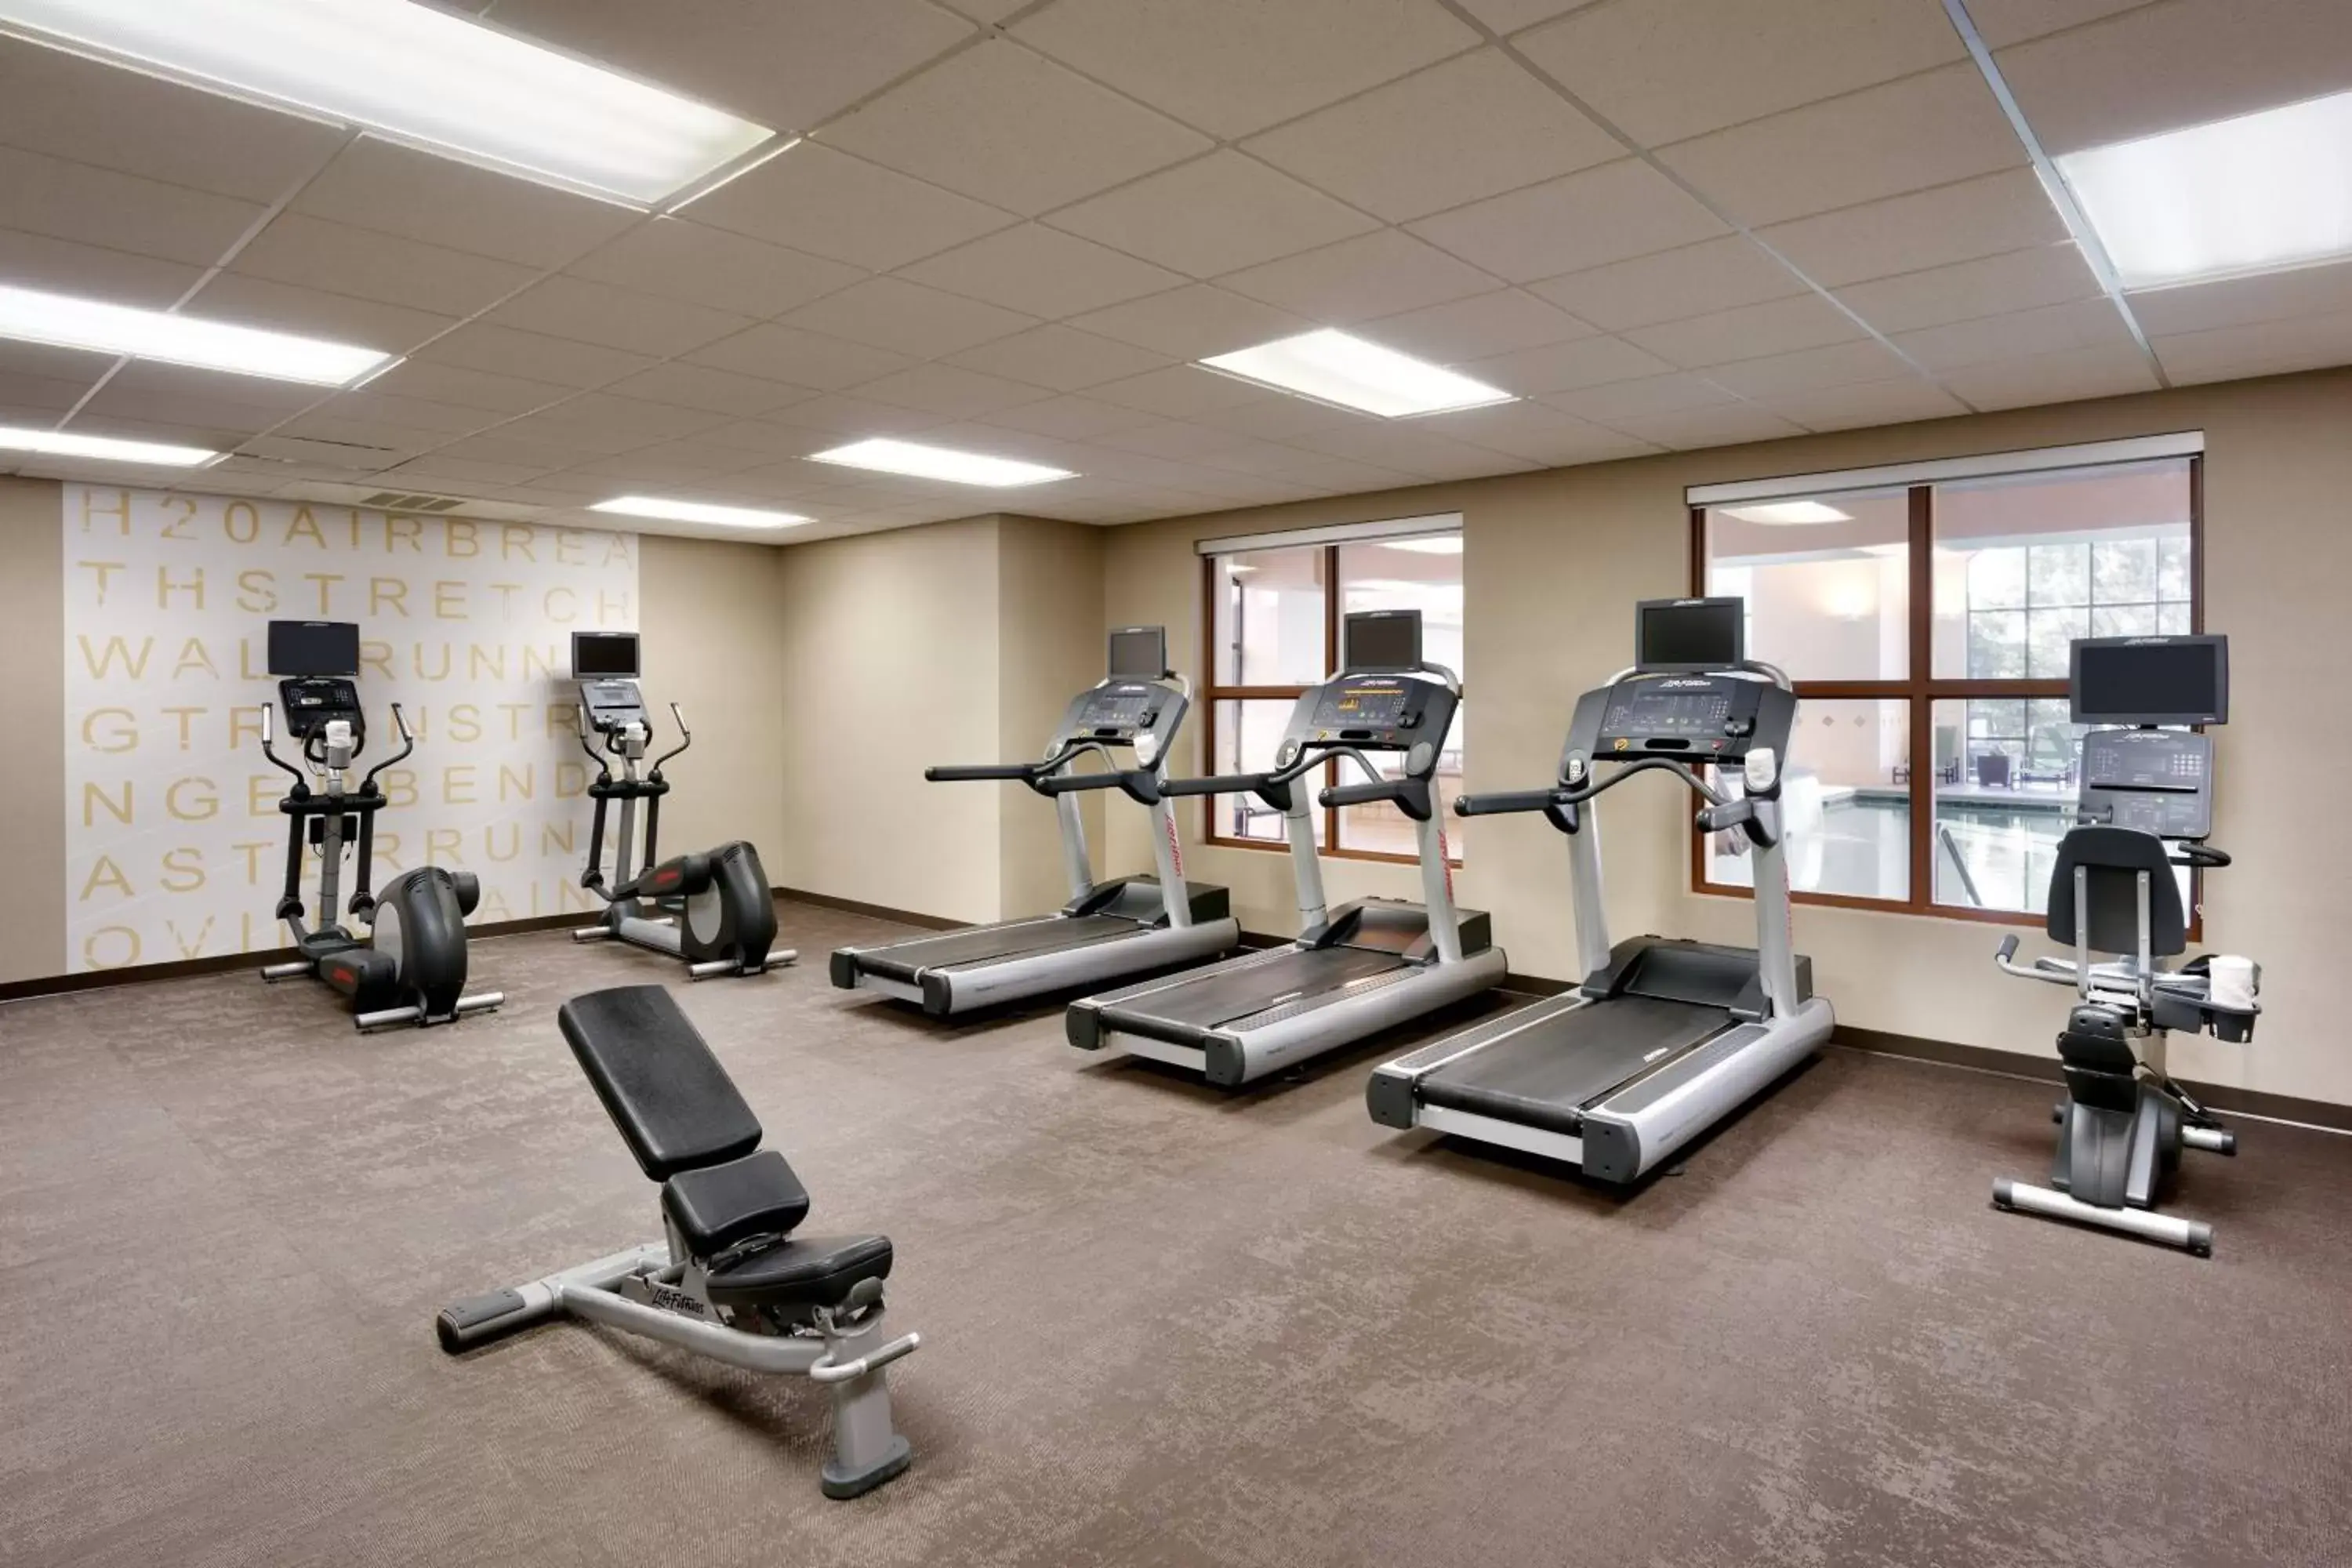 Fitness centre/facilities, Fitness Center/Facilities in Residence Inn by Marriott Idaho Falls